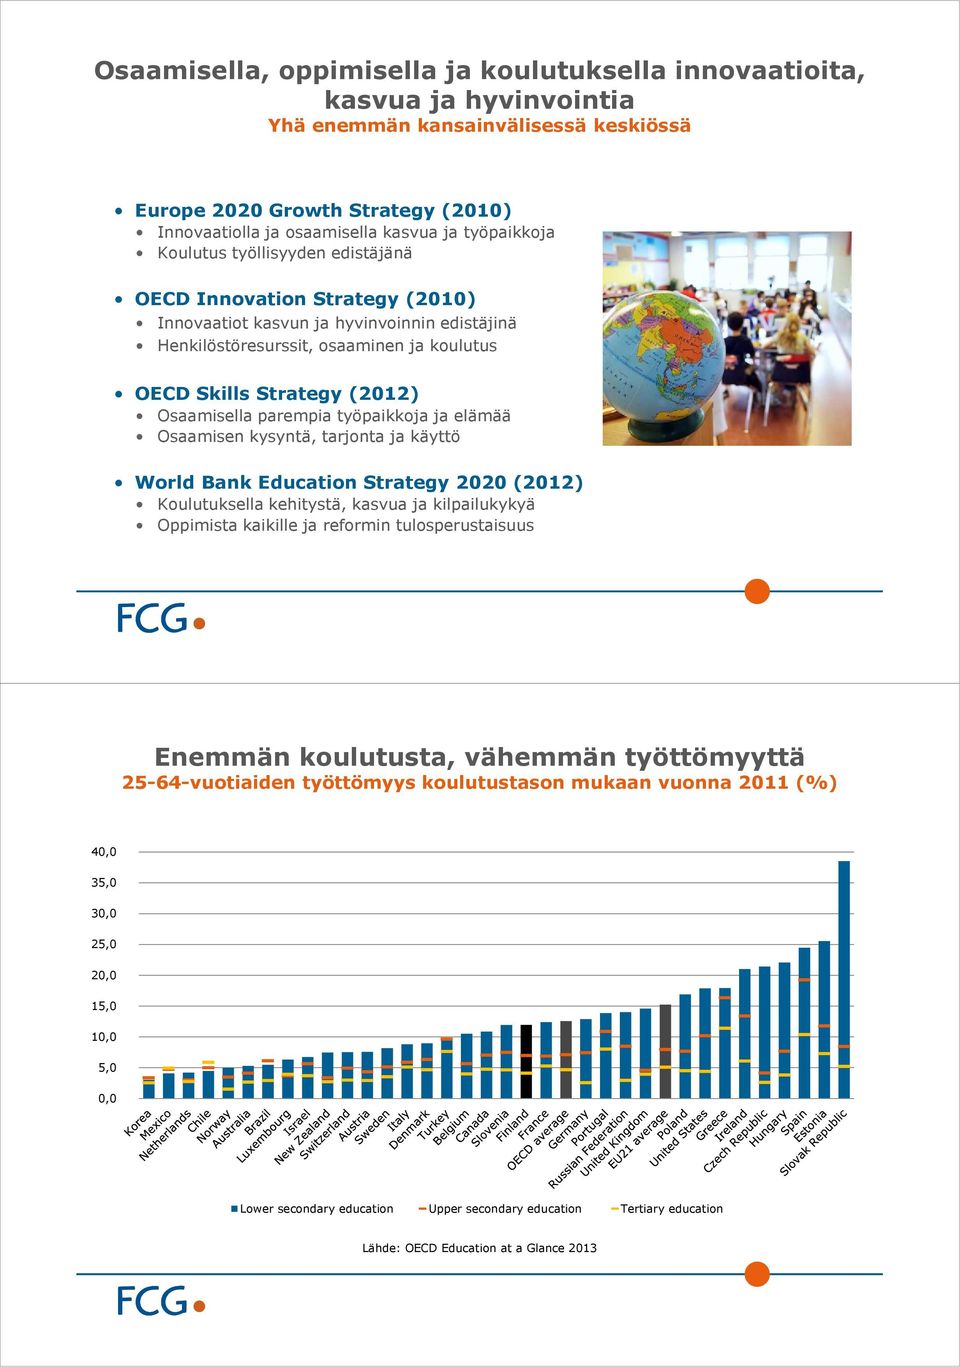 Osaamisella parempia työpaikkoja ja elämää Osaamisen kysyntä, tarjonta ja käyttö World Bank Education Strategy 2020 (2012) Koulutuksella kehitystä, kasvua ja kilpailukykyä Oppimista kaikille ja